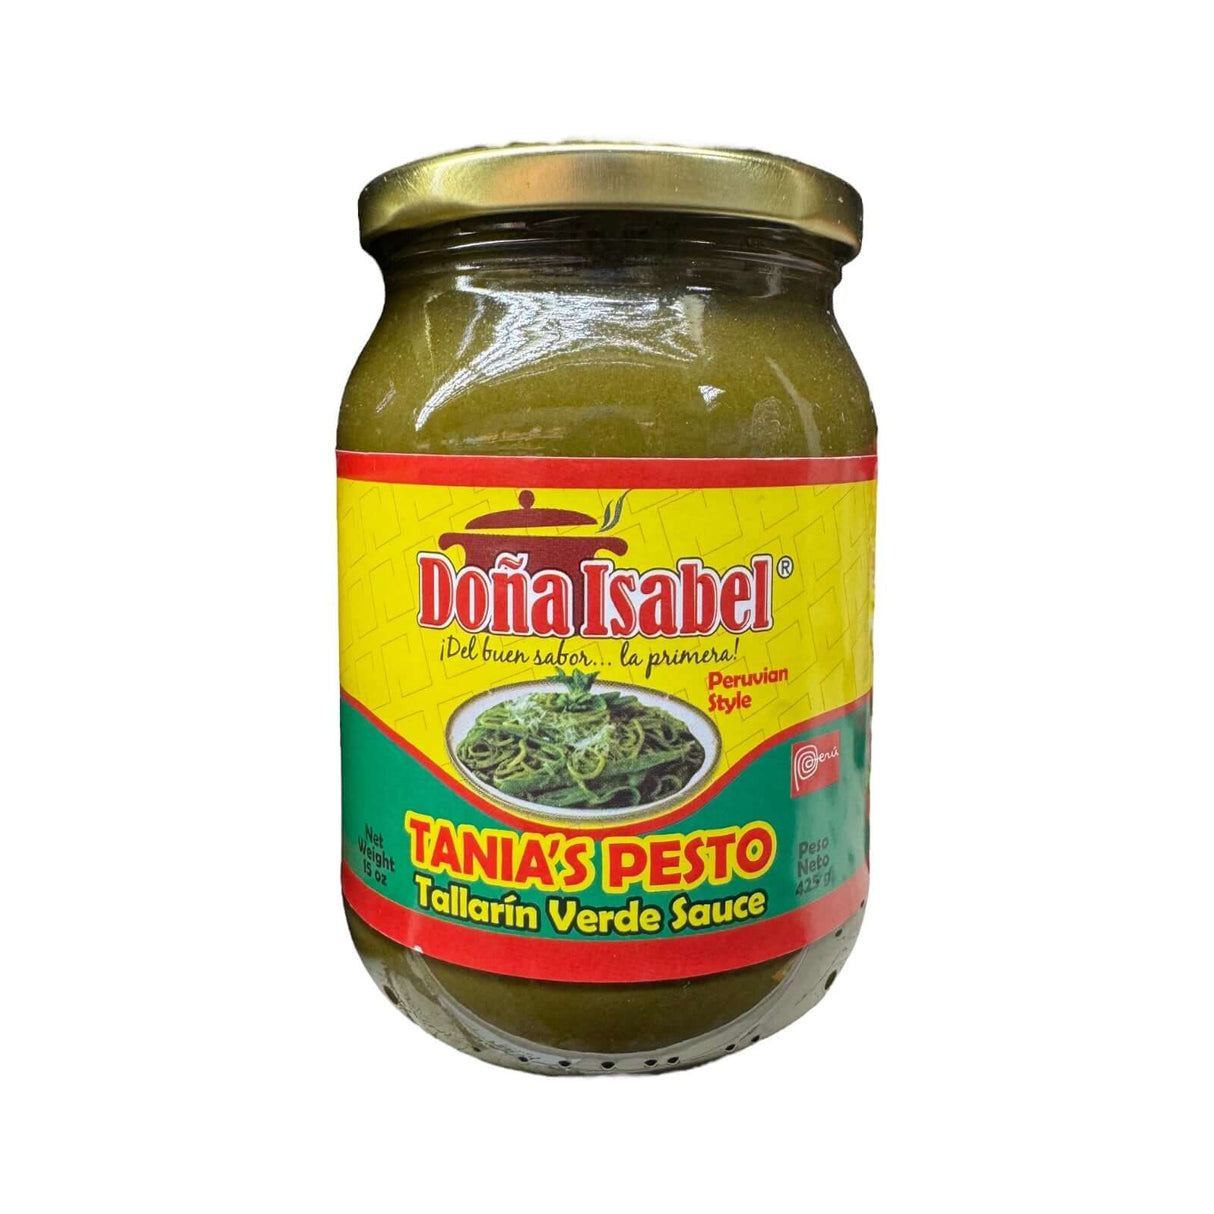 Doña Isabel Tania's Pesto (Tallarin Verde Sauce)